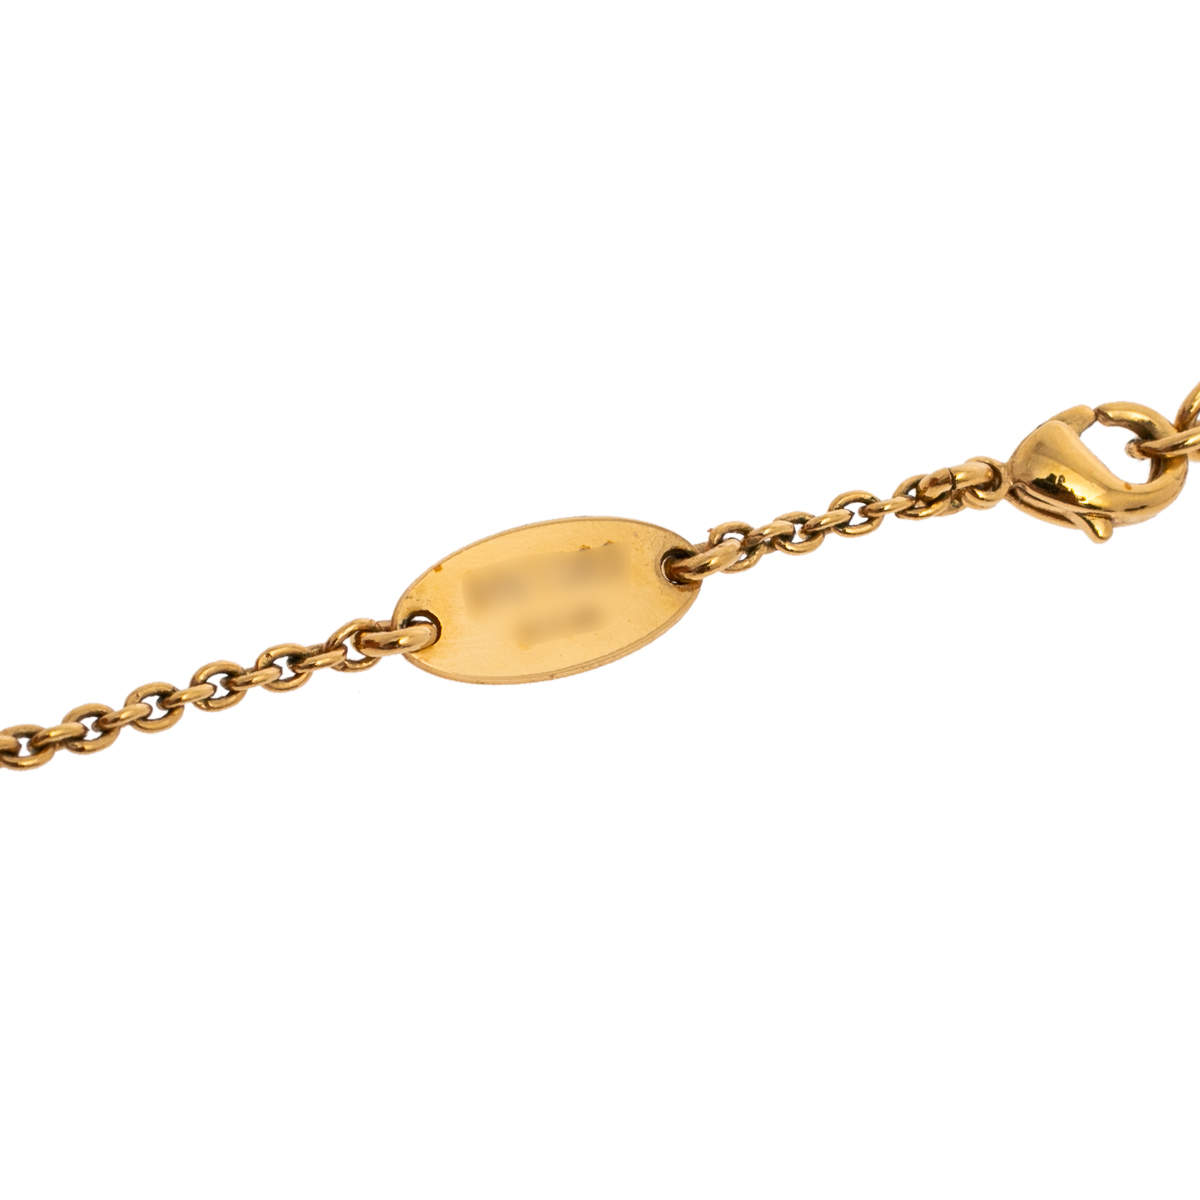 Louis Vuitton Crystal Essential V Necklace - Gold-Tone Metal Pendant  Necklace, Necklaces - LOU265101